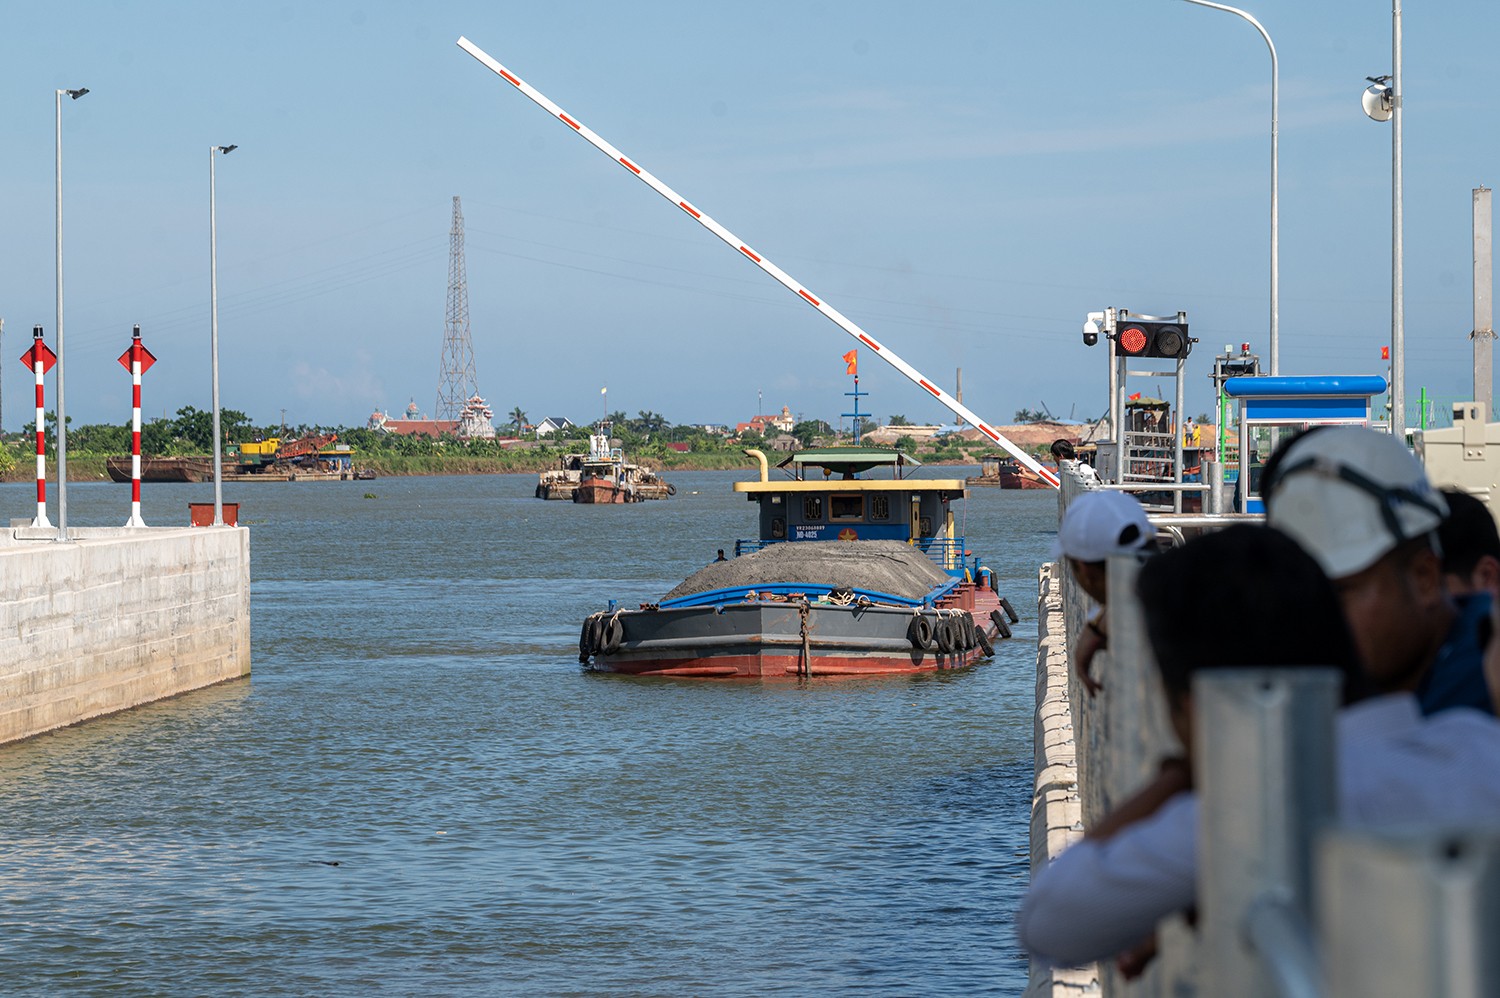 Mục sở thị kênh nối sông Đáy - Ninh Cơ 2.300 tỷ đồng vừa vận hành - Ảnh 12.